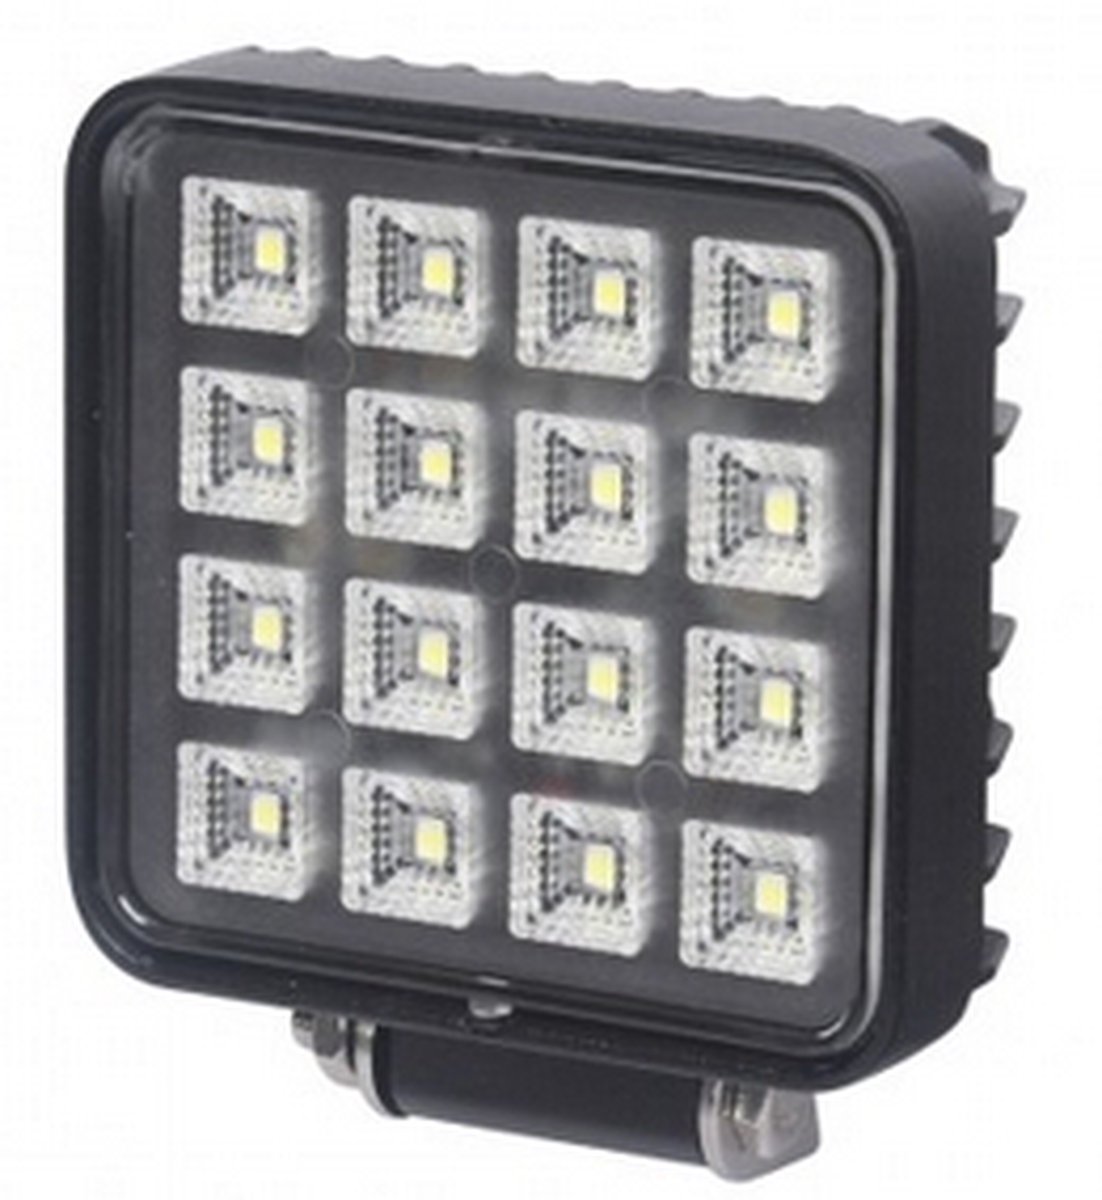 LED Werklamp met schakelaar - 16 LEDS - 16 Watt - Ledlamp - Bouwlamp